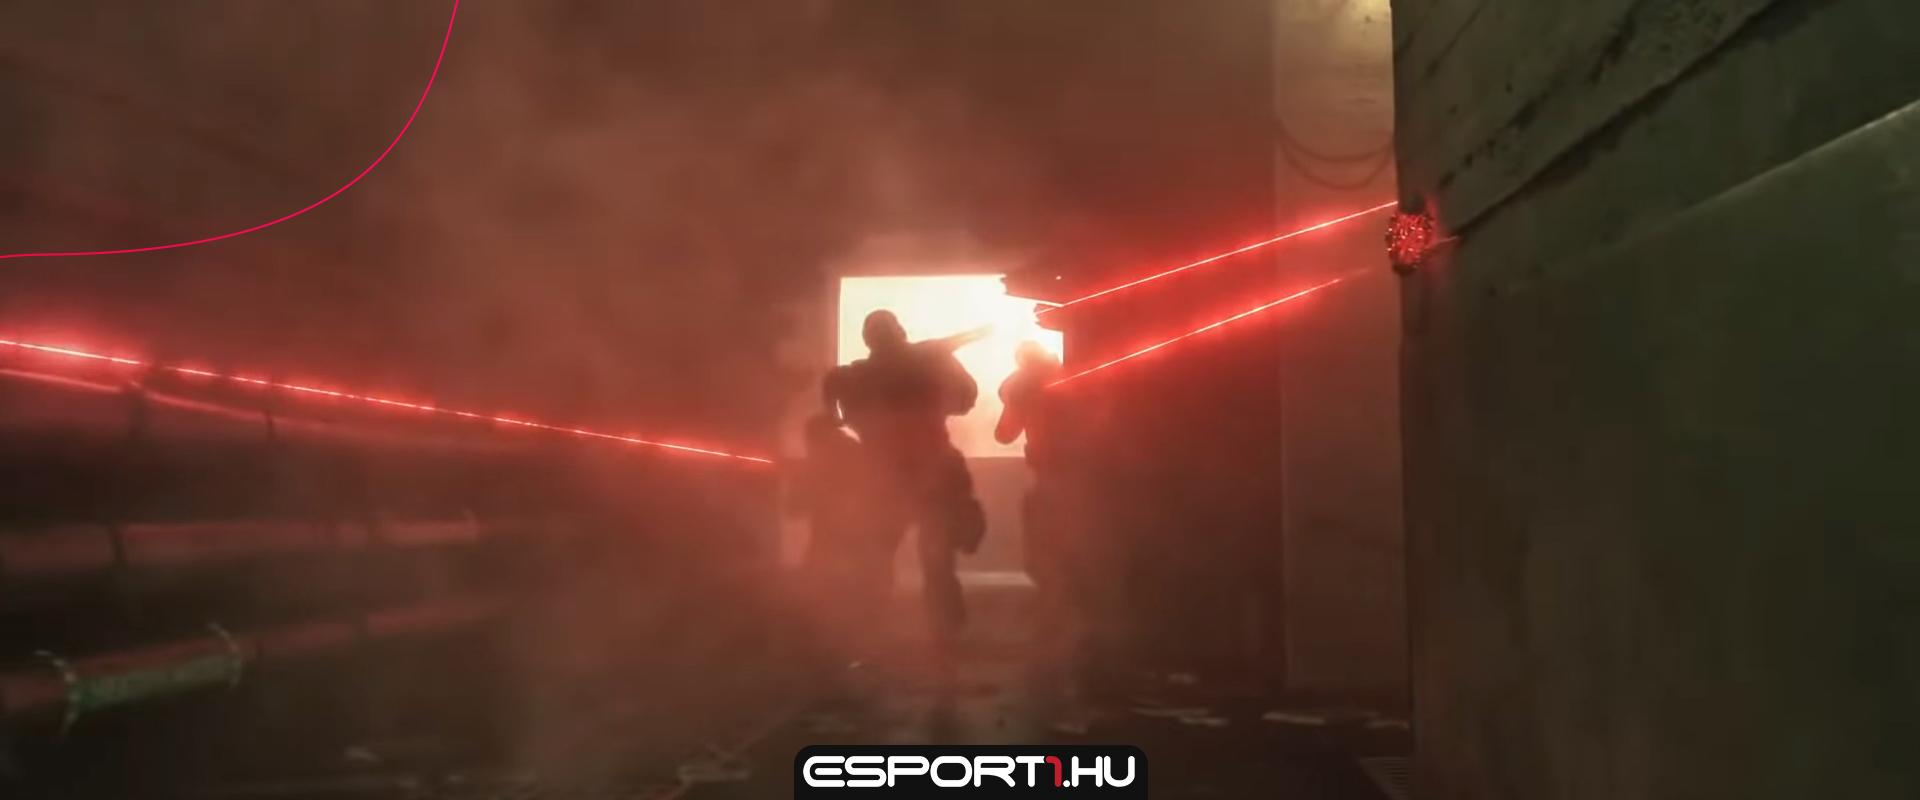 Teaser videón az új R6S operátor, aki egy új fegyvert is hoz a játékba